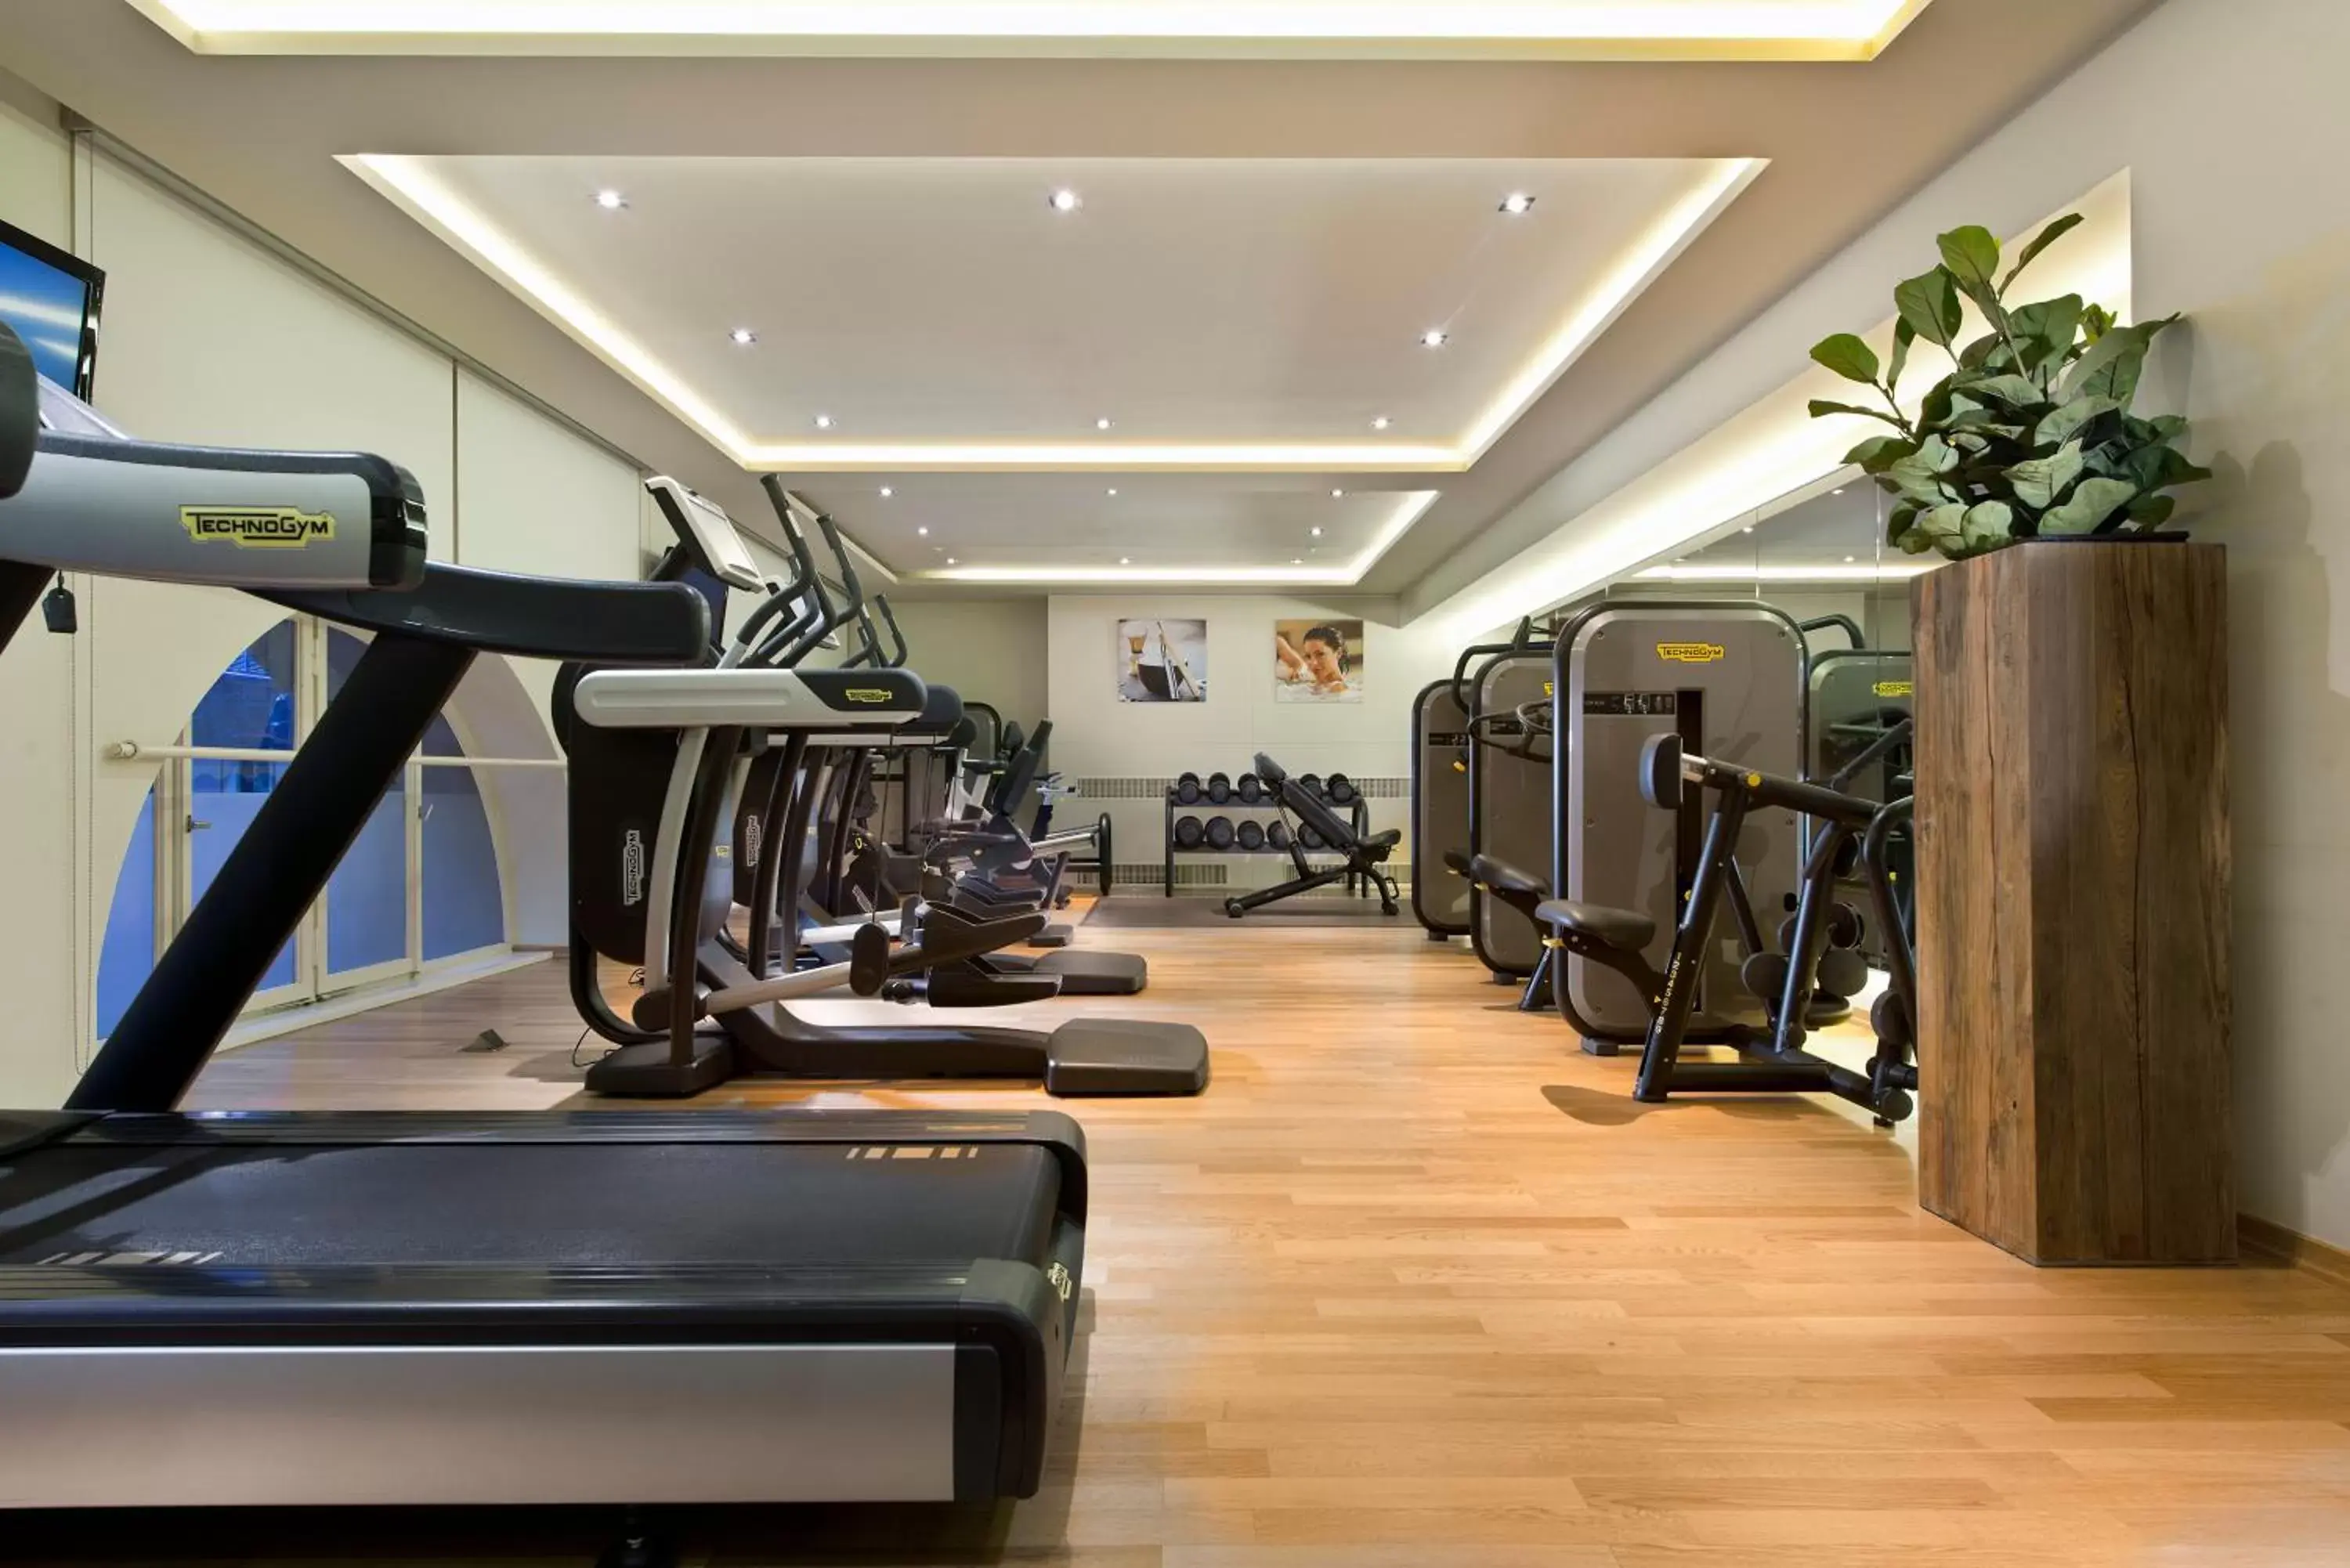 Fitness centre/facilities, Fitness Center/Facilities in Steigenberger Icon Frankfurter Hof